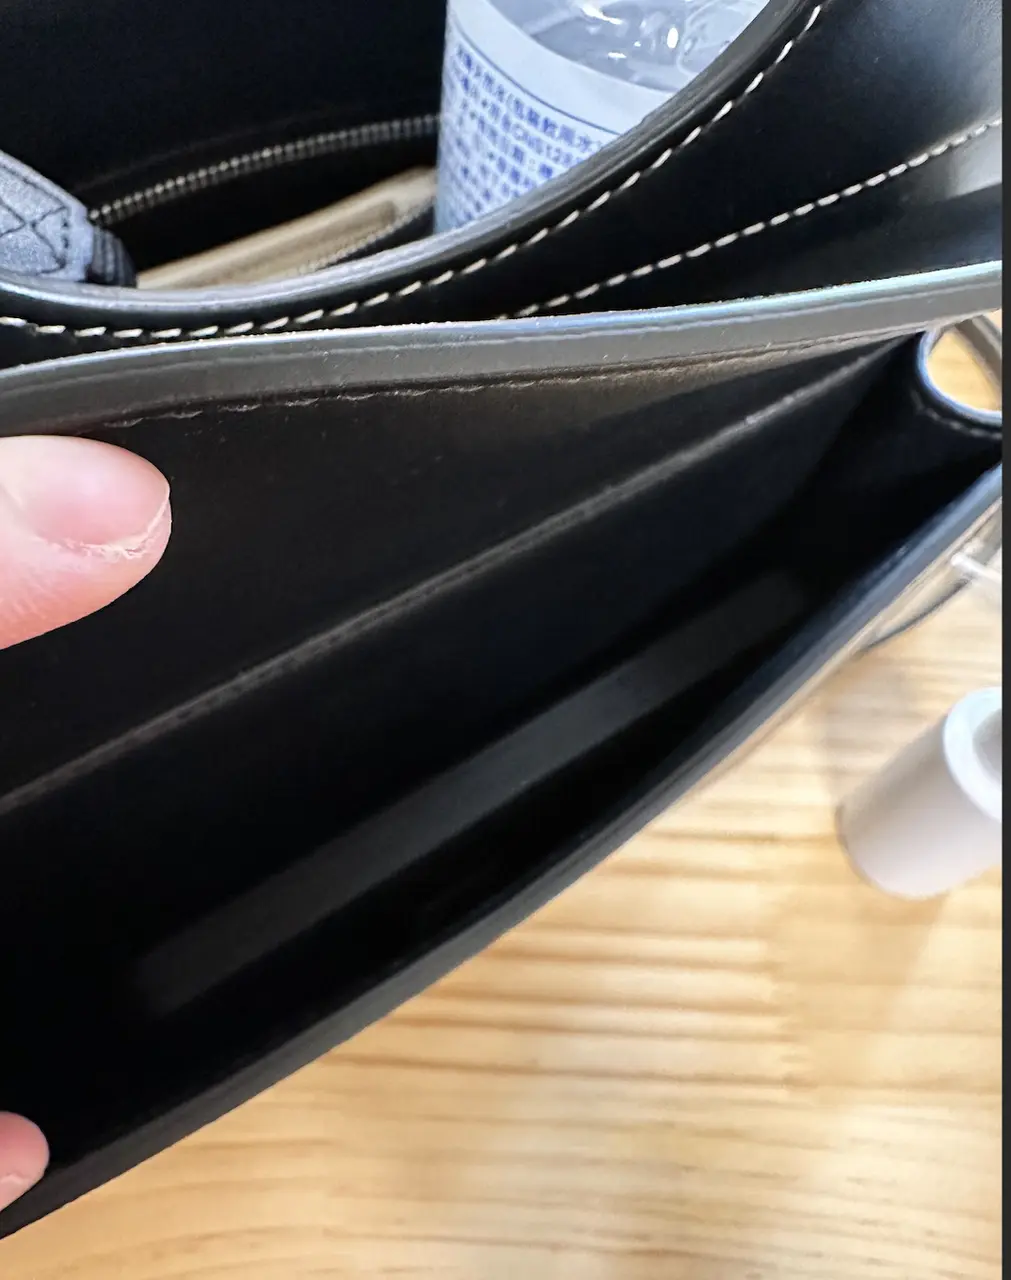 #分享 🚩華泰購入Burberry口袋包 + 容量實測(圖多) - 精品板 | Dcard